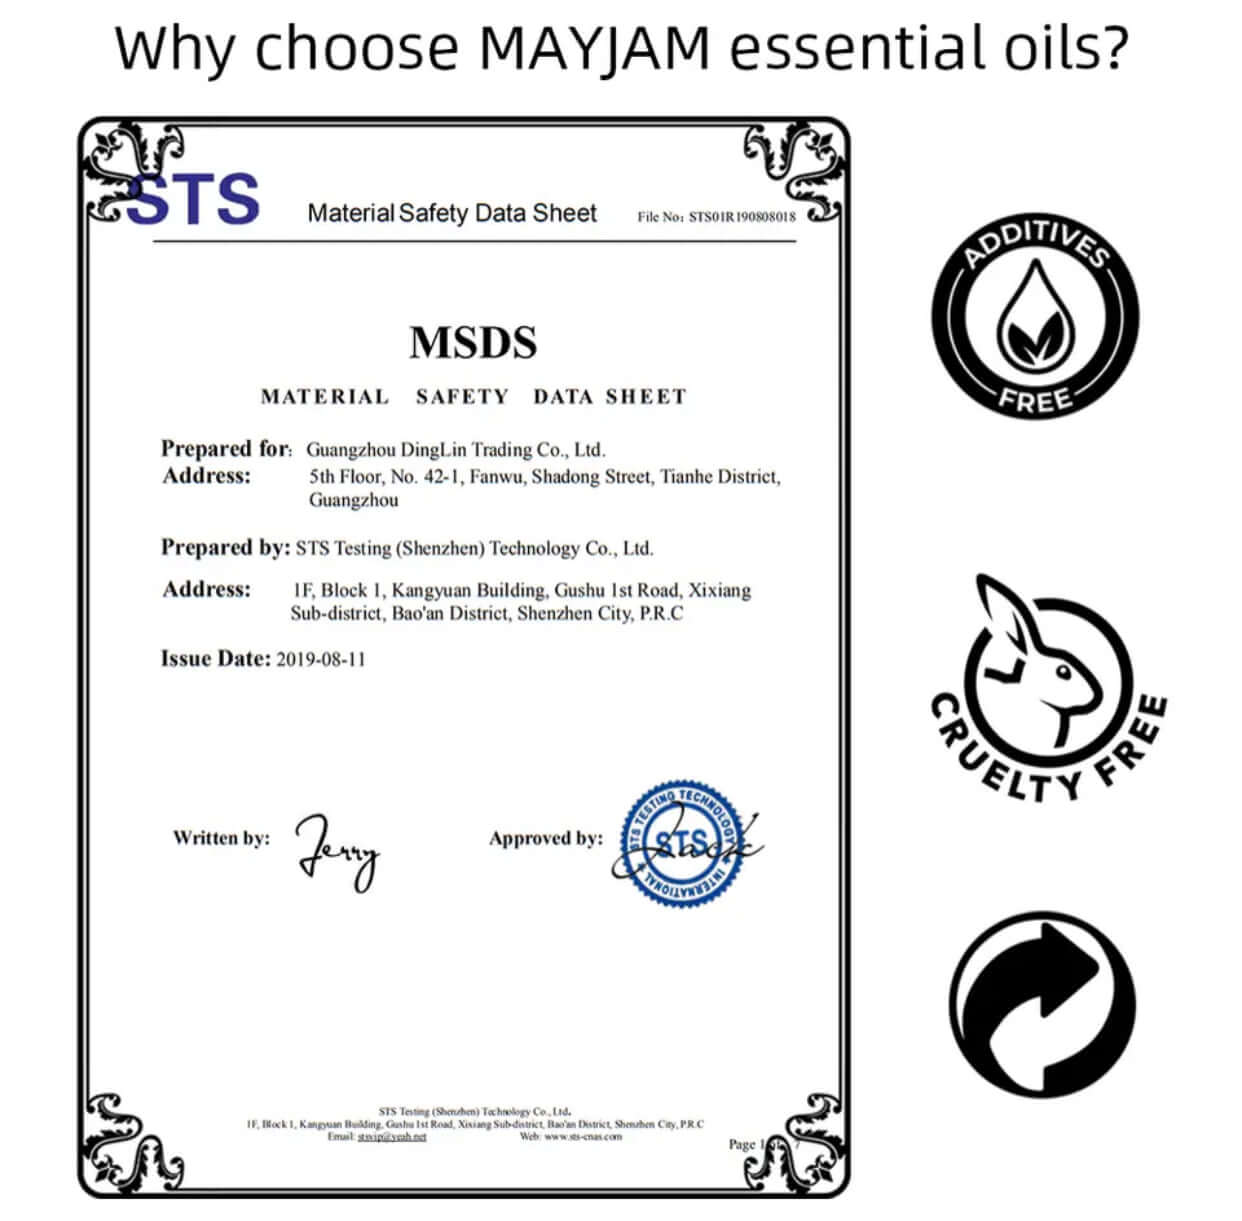 Set de aceites esenciales MAYJAM - 35 botellas como set de regalo - para humidificadores, difusores, perfumes caseros y mucho más